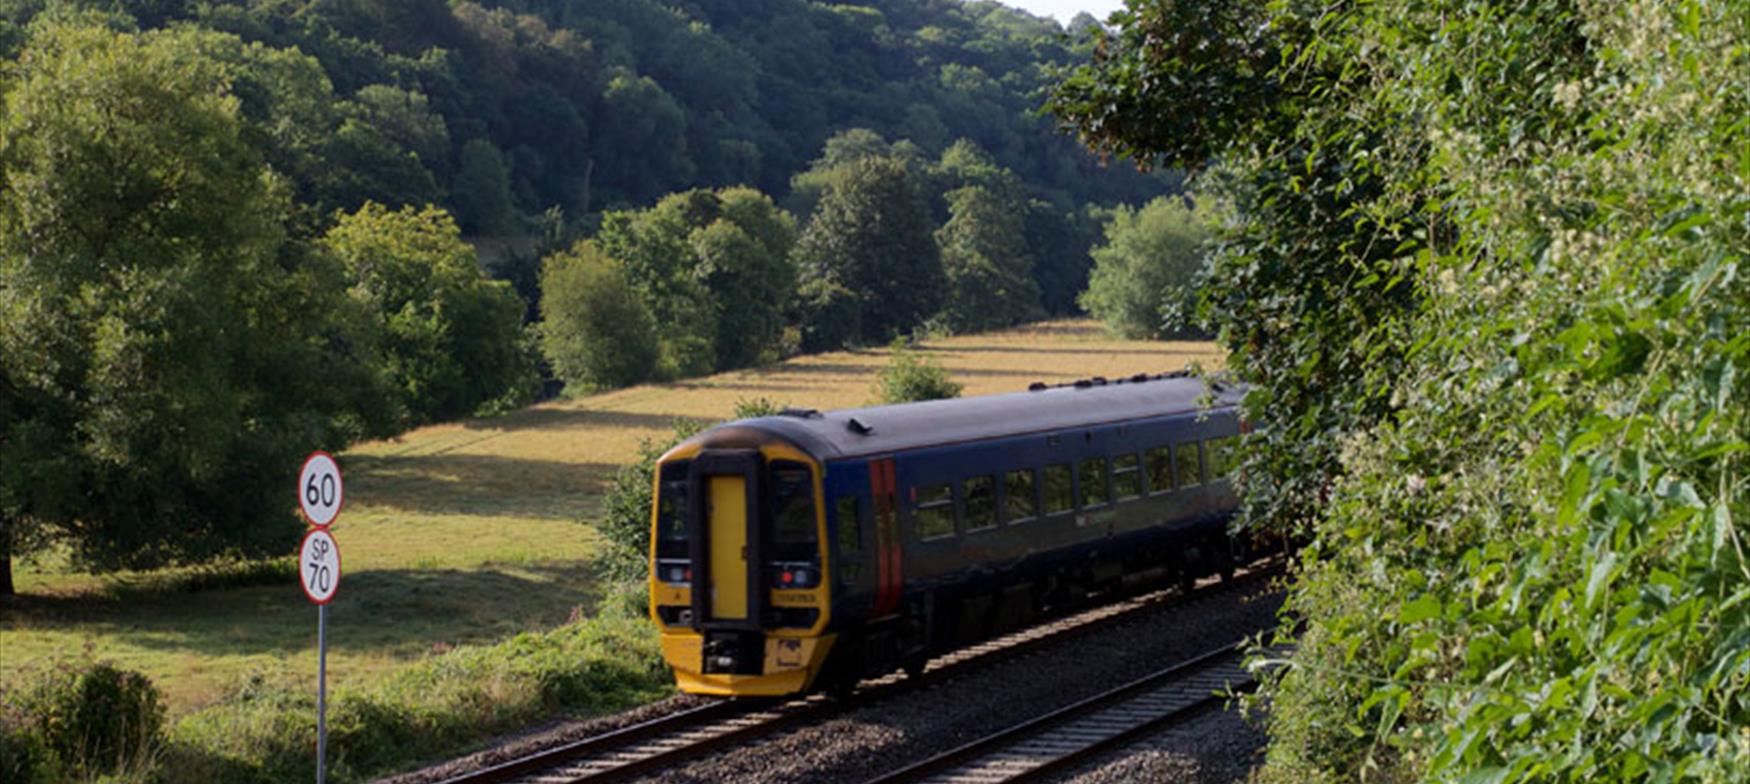 Train approaching through countryside